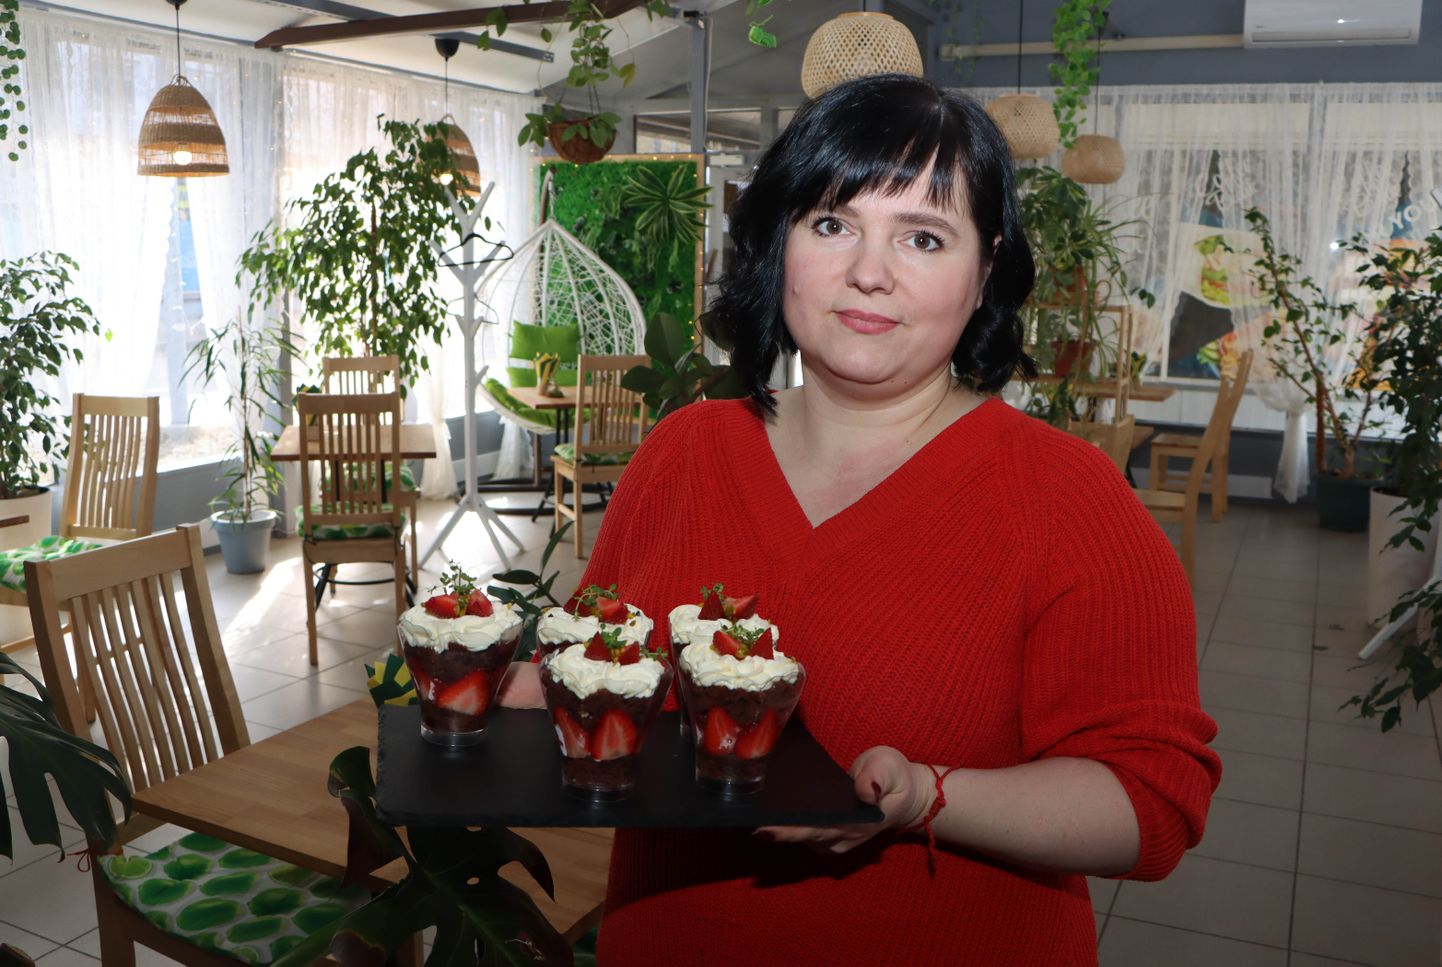 Оксана Угринчук хоть и сделала ставку на круассаны, но ими не ограничивается - постоянно придумывает новые десерты и блюда.